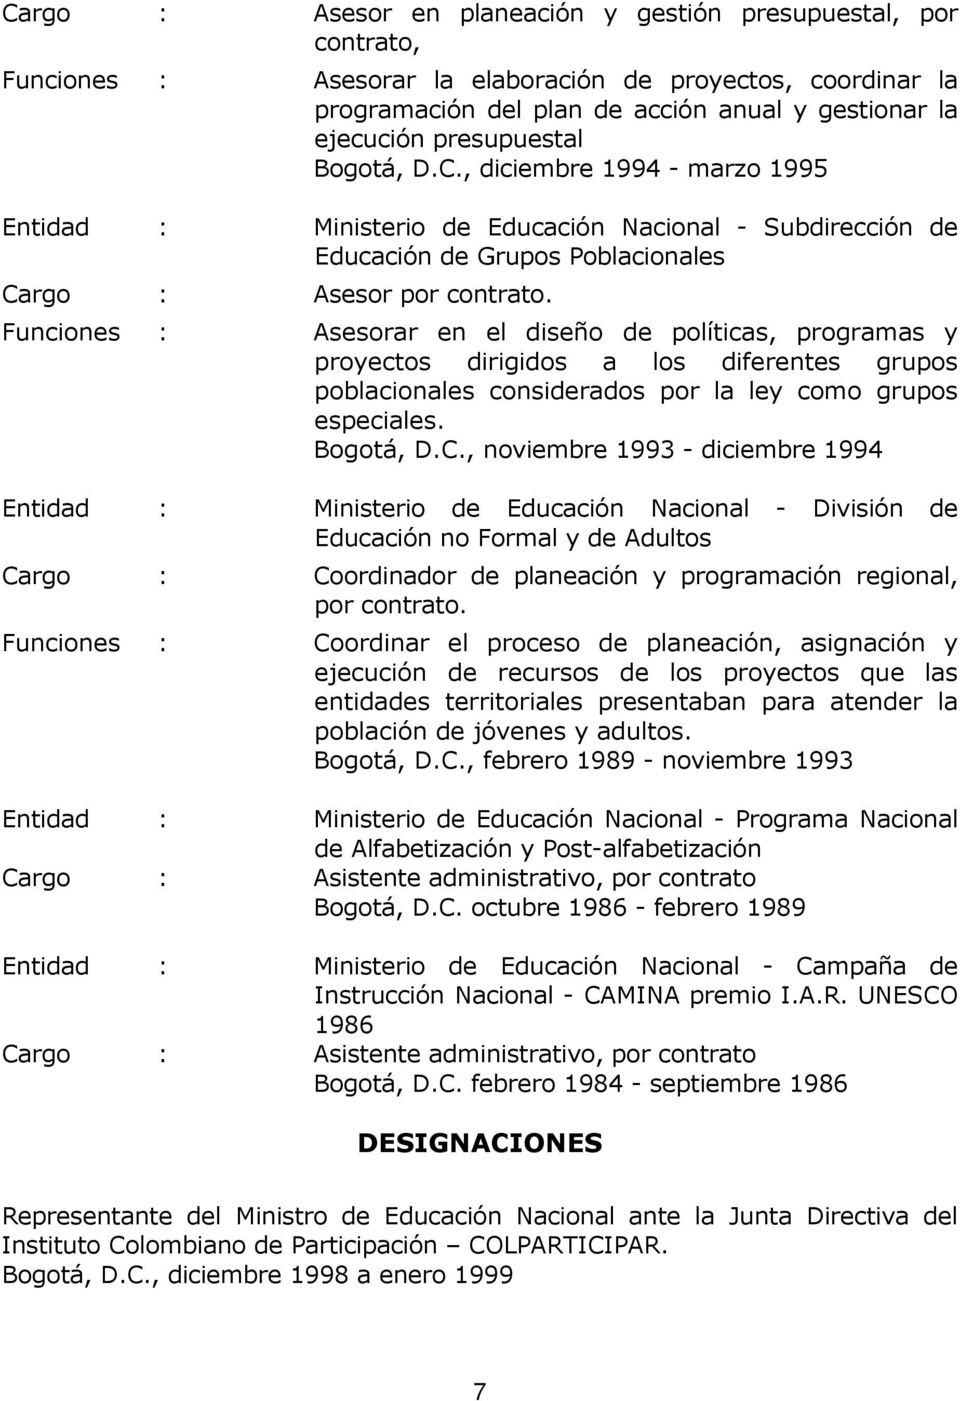 Funciones : Asesorar en el diseño de políticas, programas y proyectos dirigidos a los diferentes grupos poblacionales considerados por la ley como grupos especiales. Bogotá, D.C.